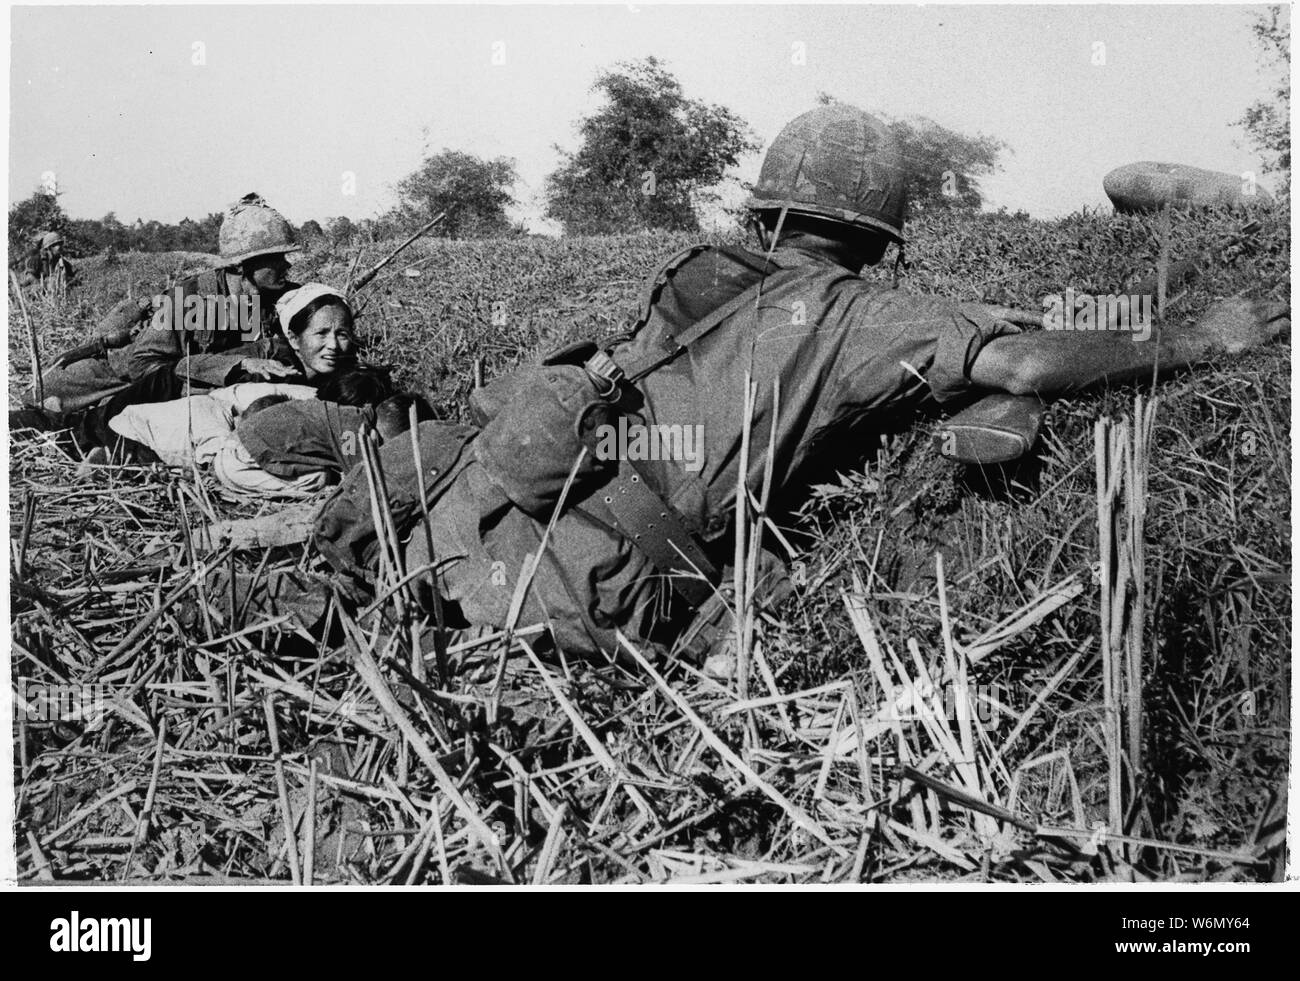 Vietnam....un soldat de la 1ère Division d'infanterie des motions pour une femme réfugiée de la garder la tête des enfants lors d'un combat avec le Viet Cong qui avaient essayé de tendre une embuscade à l'unité lors d'un déménagement dans une zone traversée par des haies de bambou. Banque D'Images